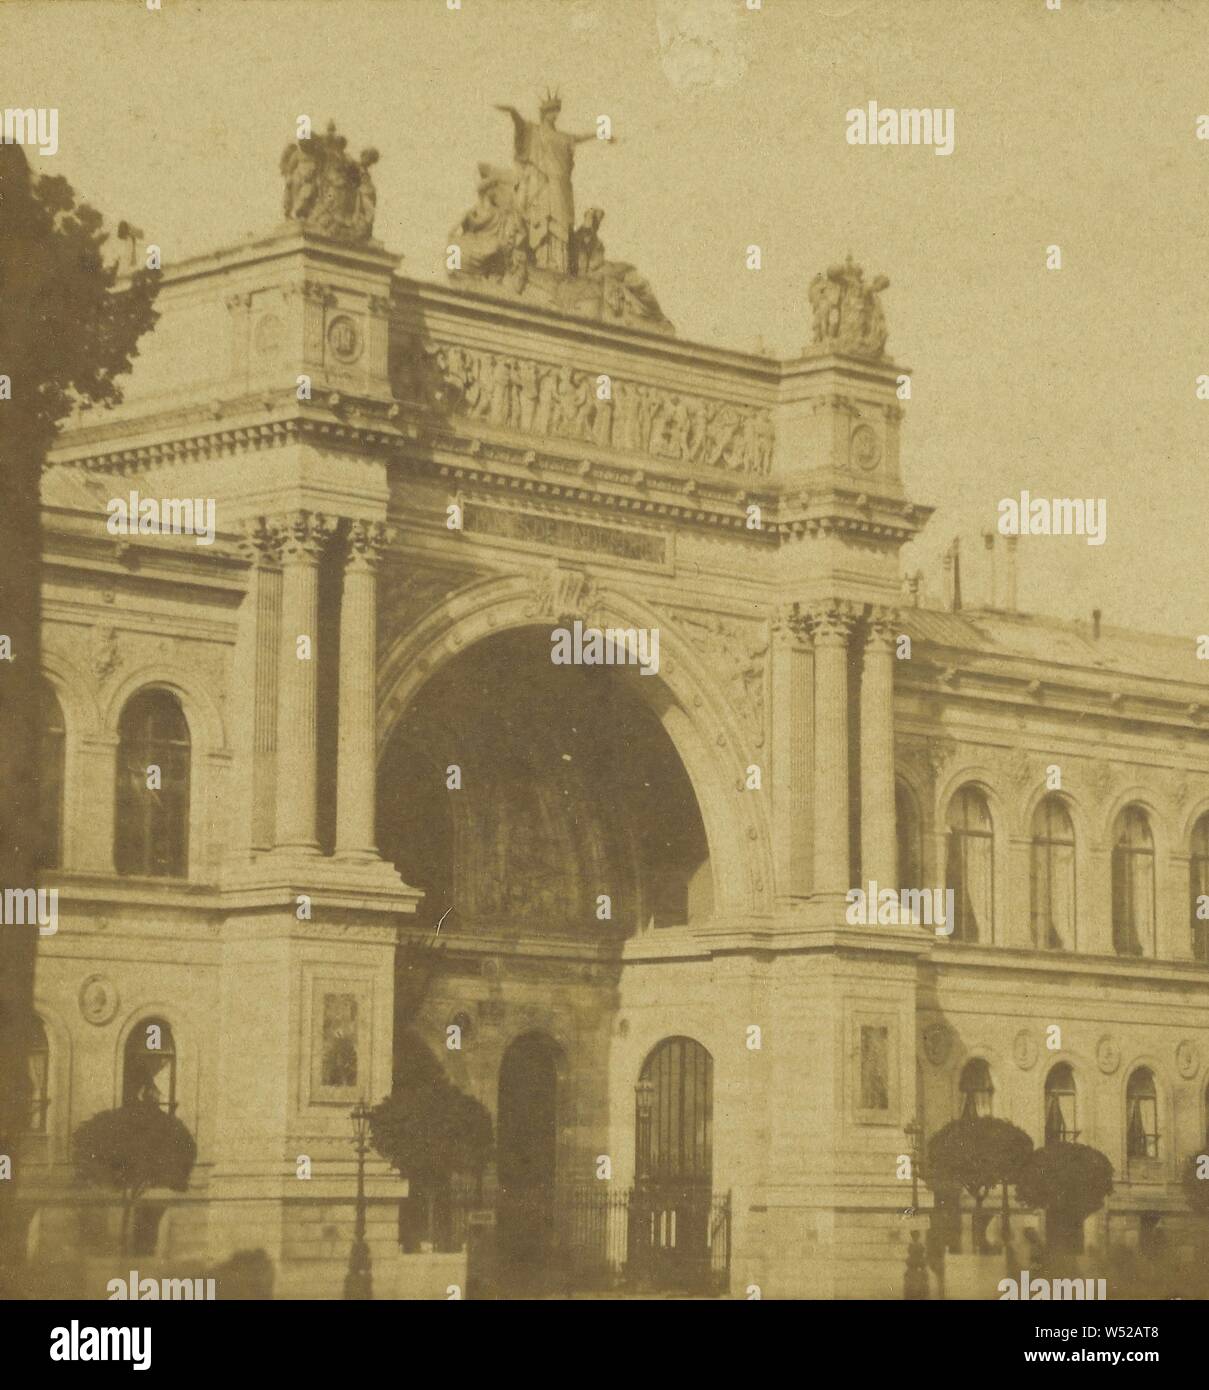 Palais de l'Industrie (Exposición) Champs Elysee, Lecocq-Frêné activo (franceses, París, Francia, 1860), alrededor de 1860, albúmina imprimir plata Foto de stock